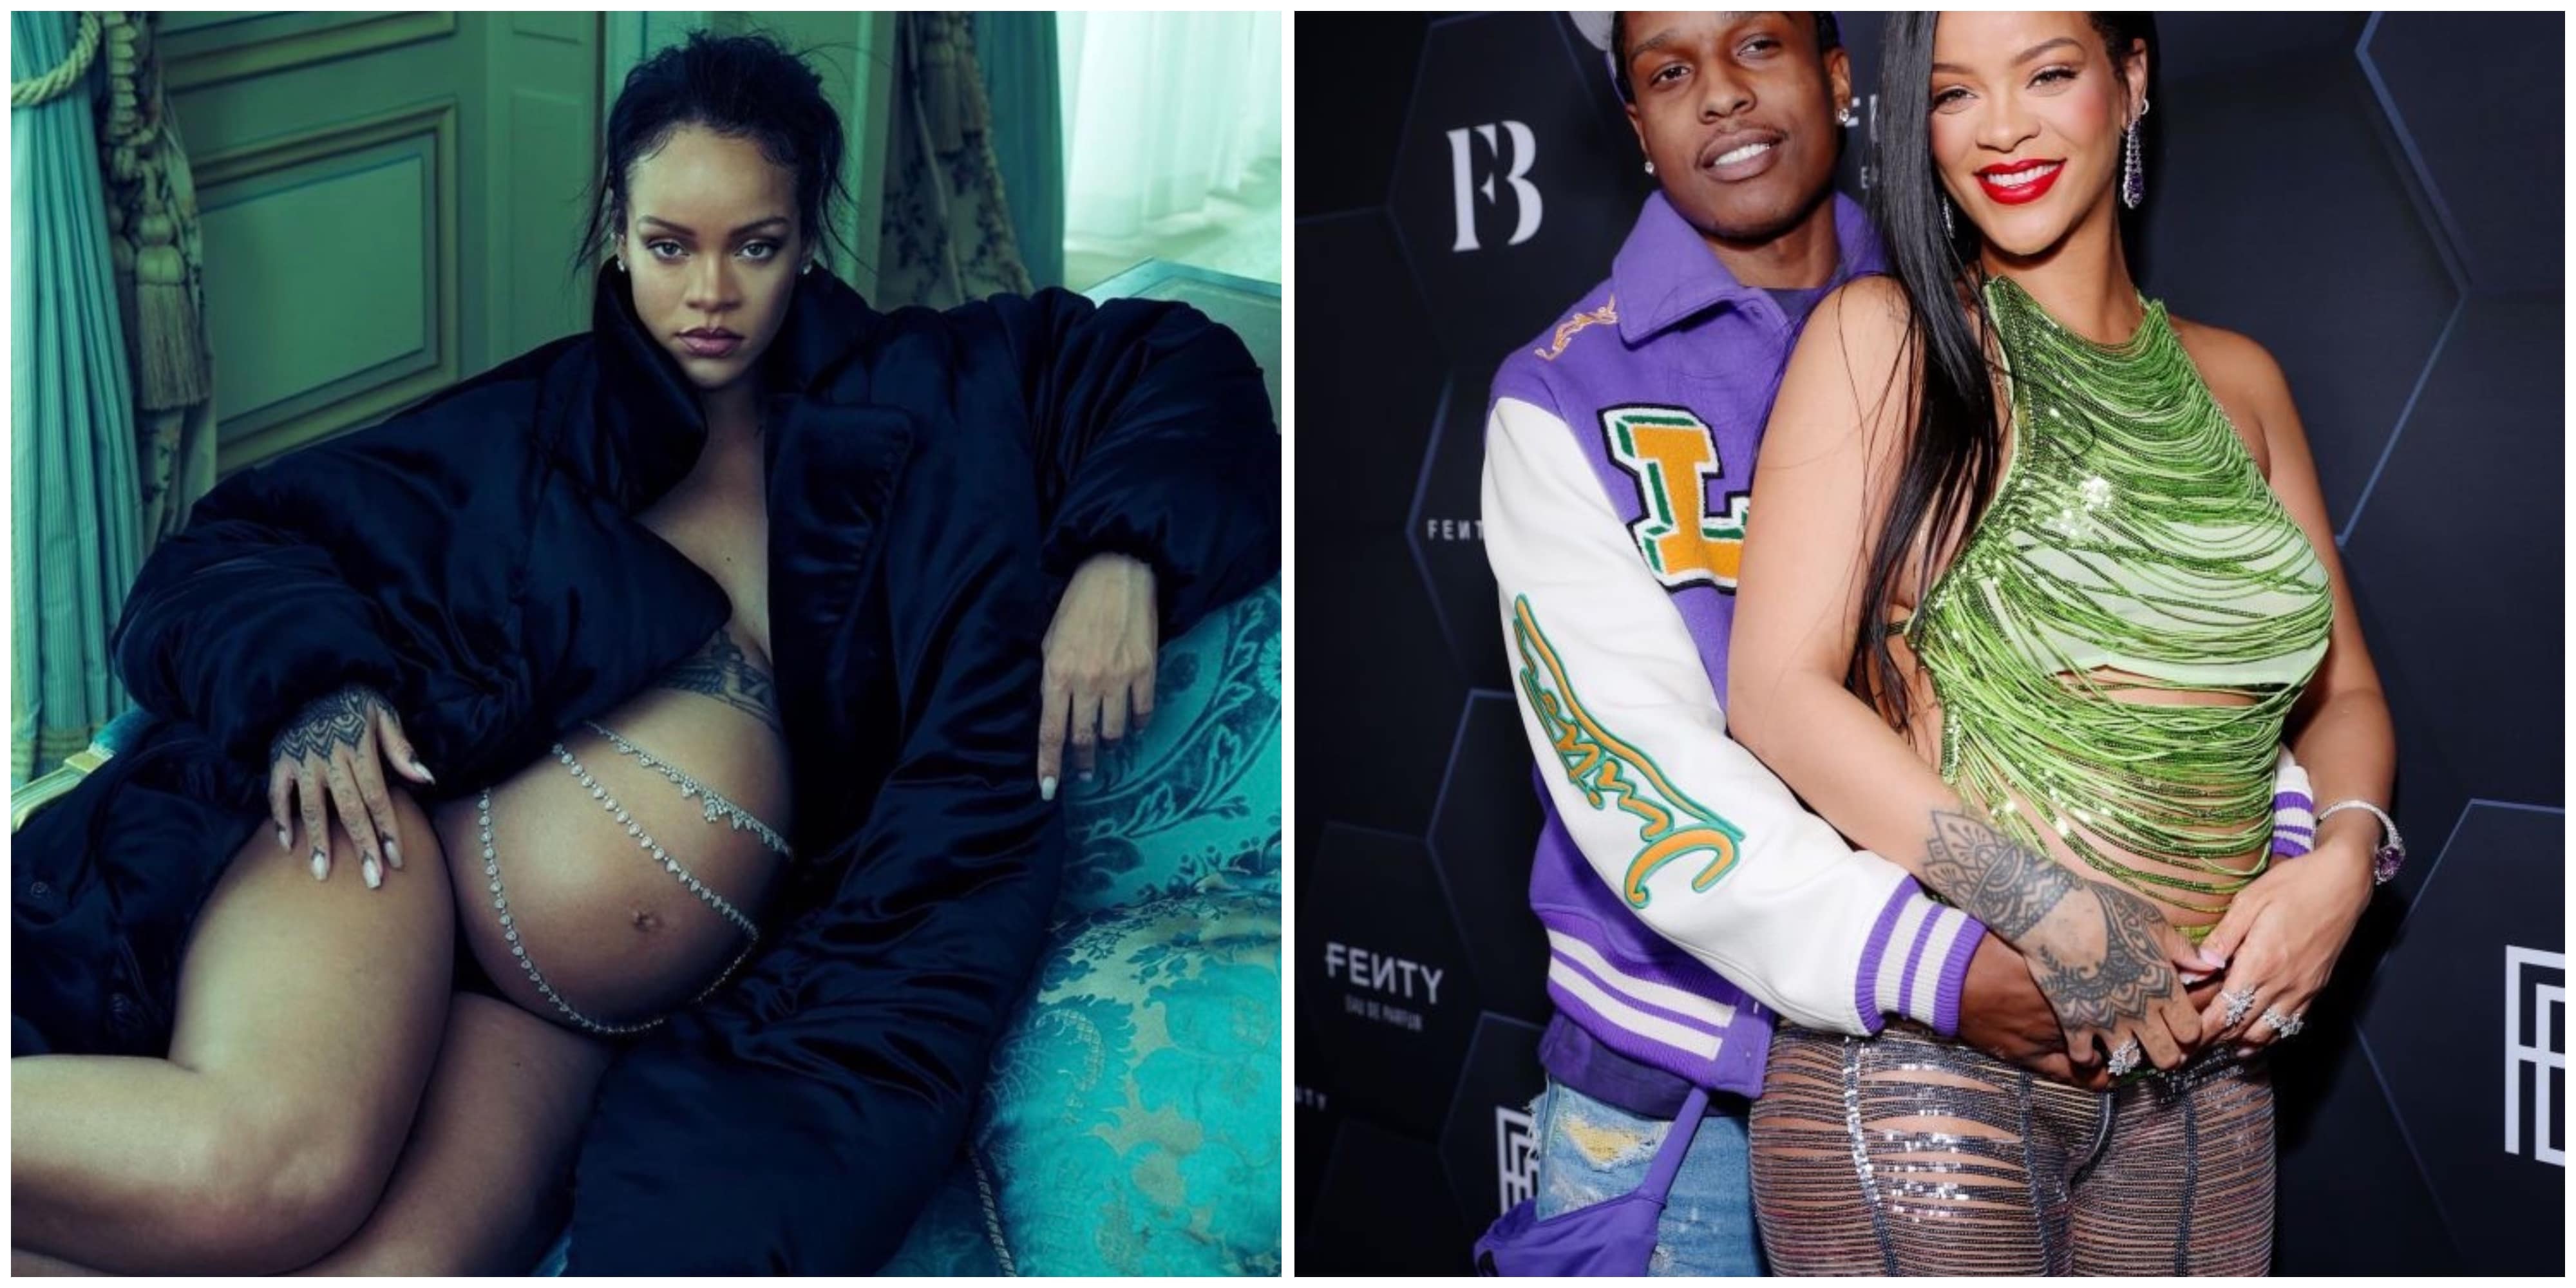 Rumeurs d’infidélité entre Rihanna et A$AP Rocky : la prétendue maîtresse Amina Muaddi s'exprime